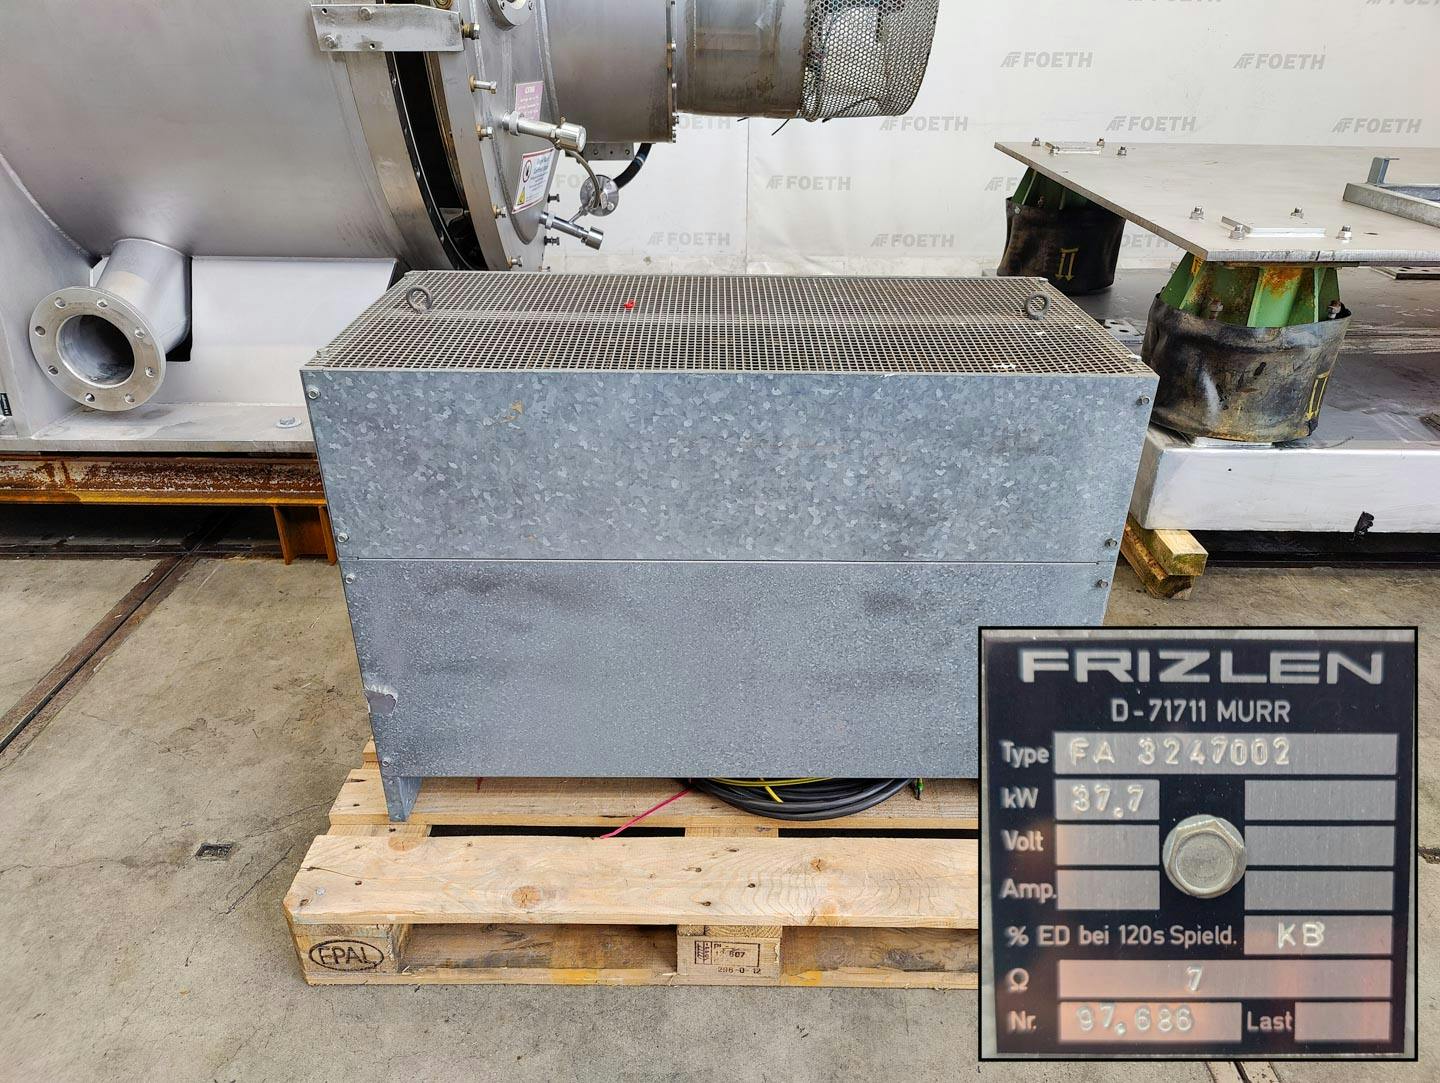 Fima Process Trockner TZT-1300 - centrifuge dryer - Wirówka koszowa - image 10